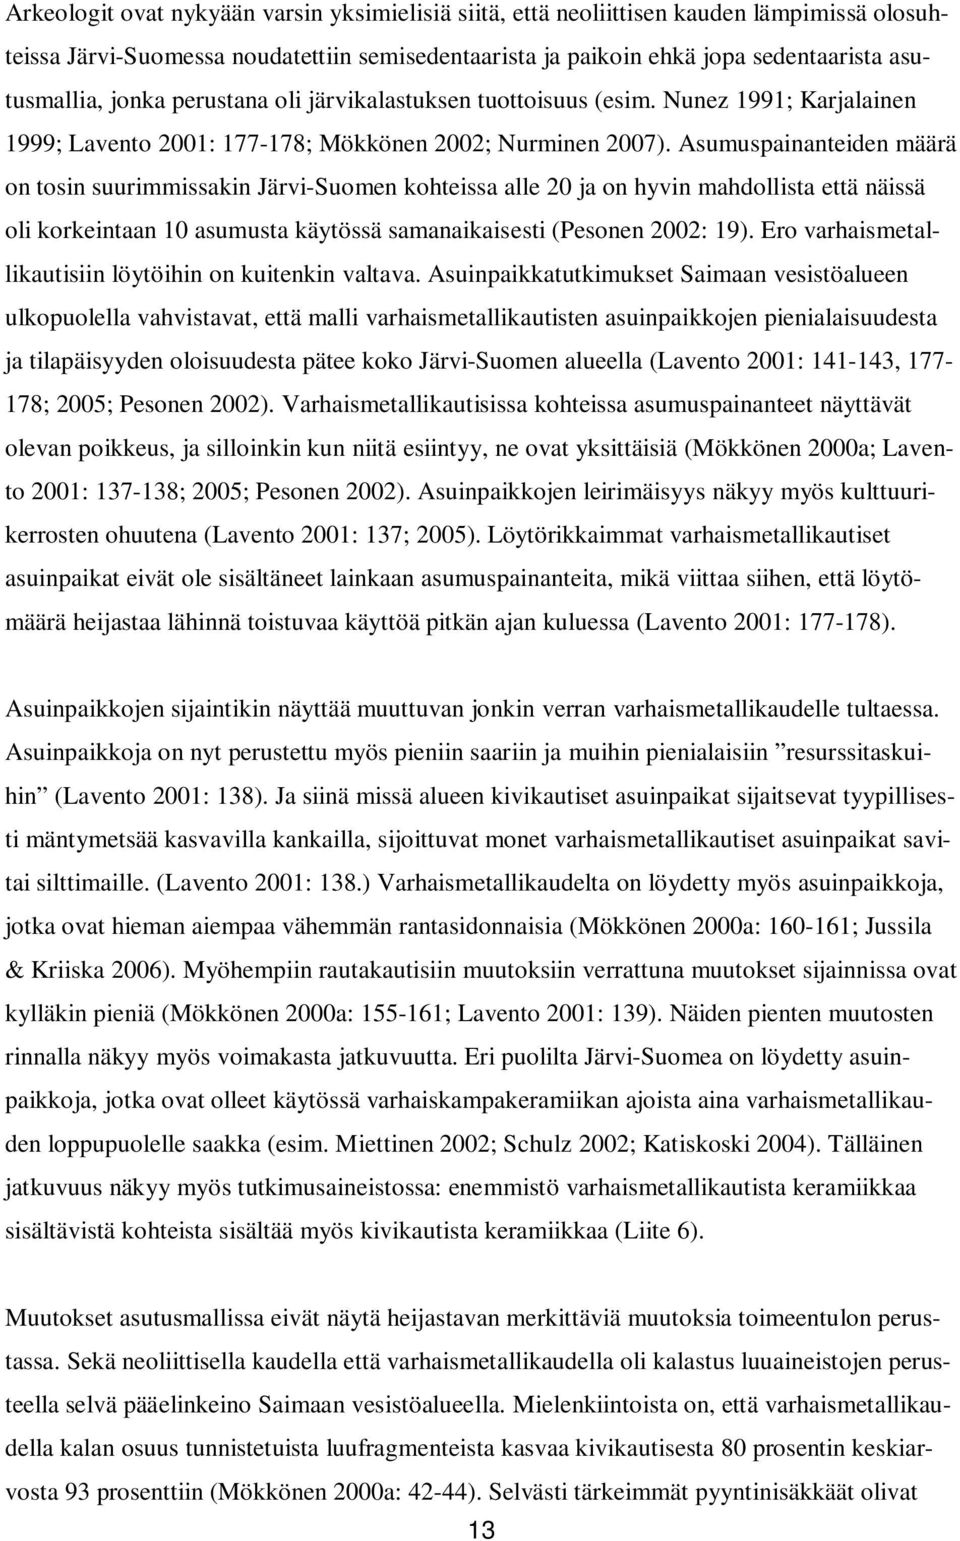 Asumuspainanteiden määrä on tosin suurimmissakin Järvi-Suomen kohteissa alle 20 ja on hyvin mahdollista että näissä oli korkeintaan 10 asumusta käytössä samanaikaisesti (Pesonen 2002: 19).